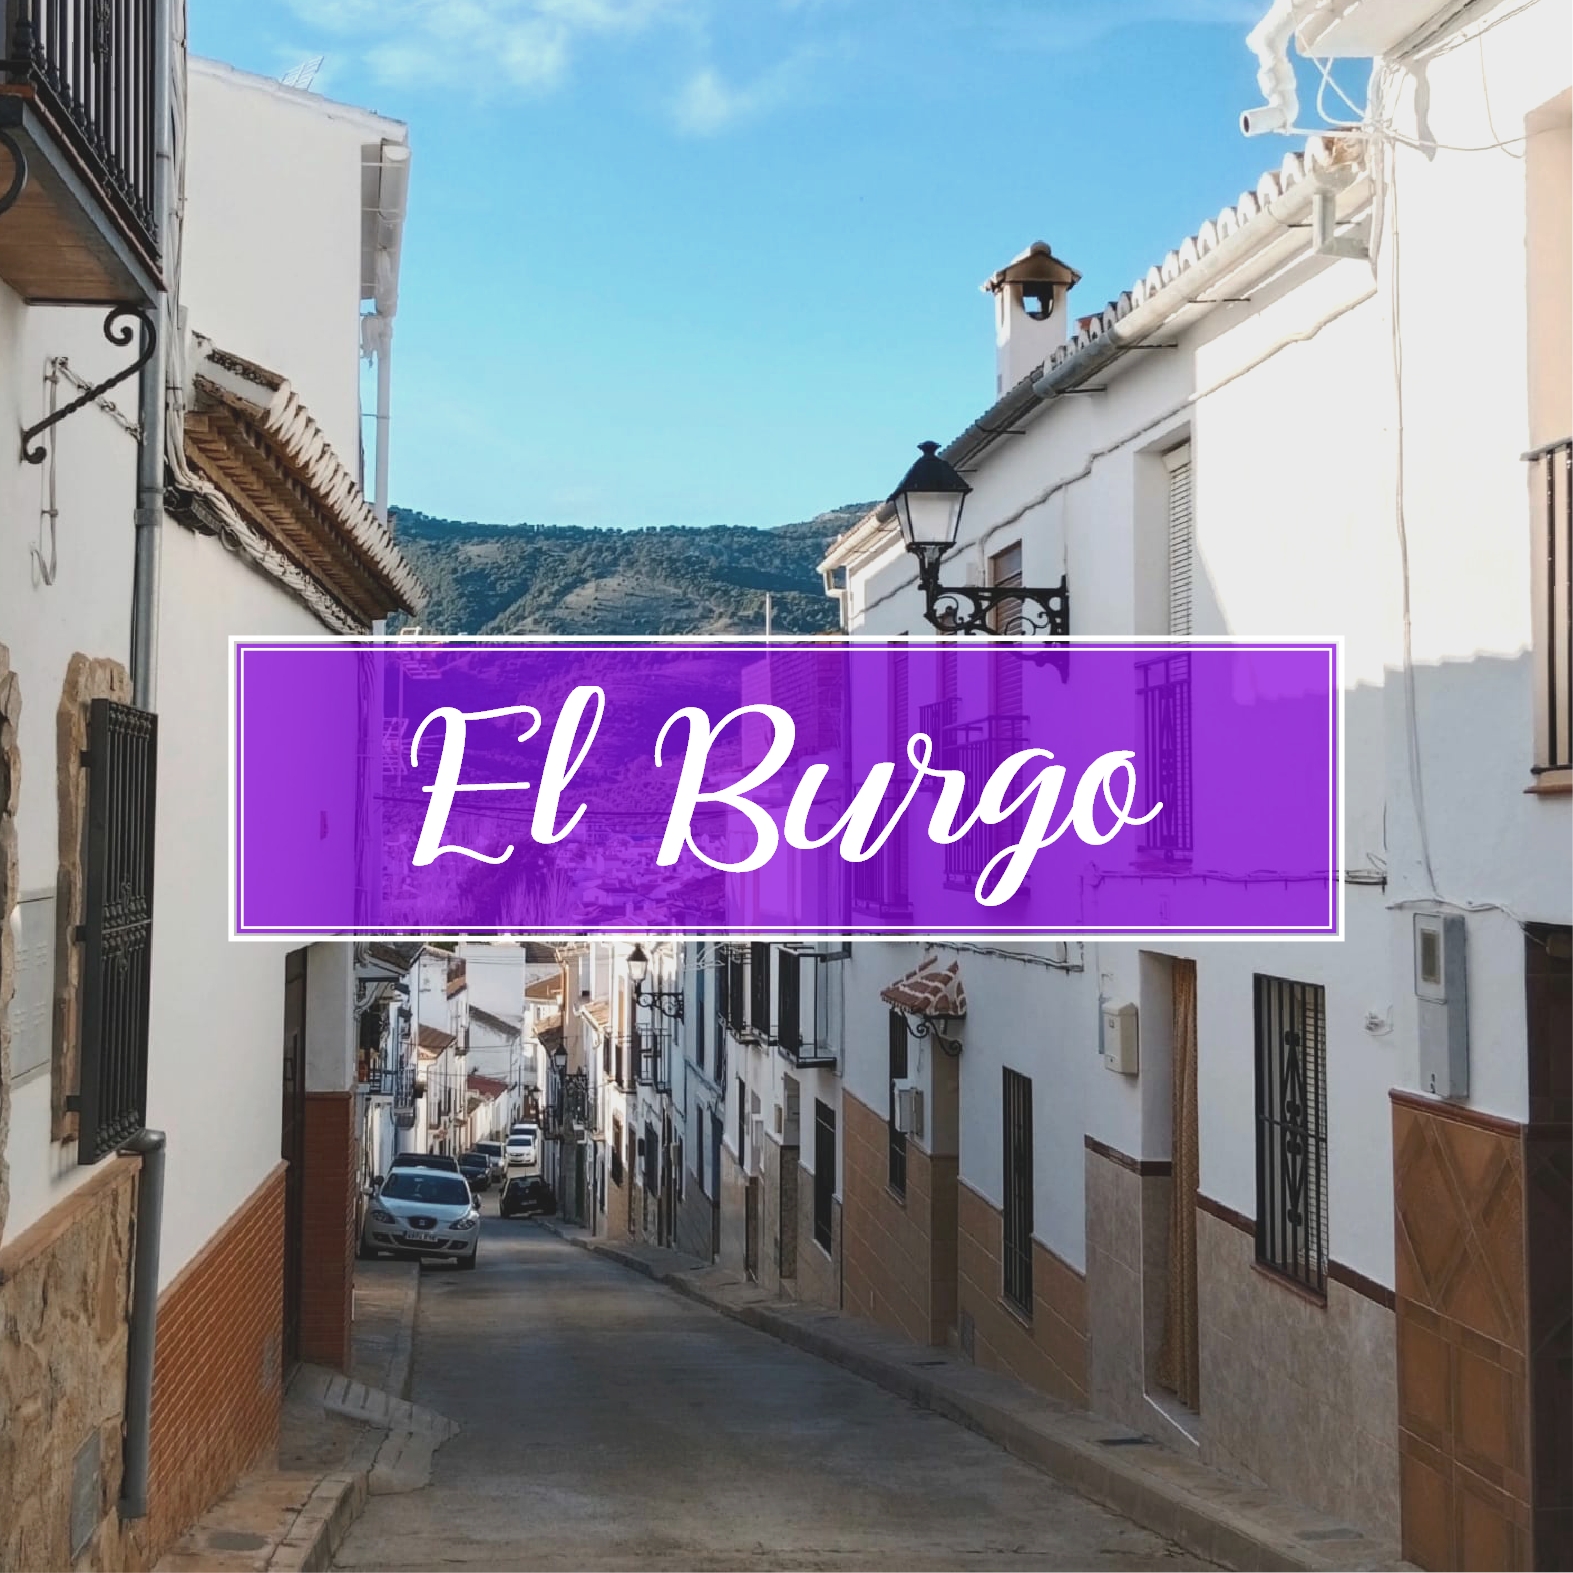 El Burgo Pueblo Malaga